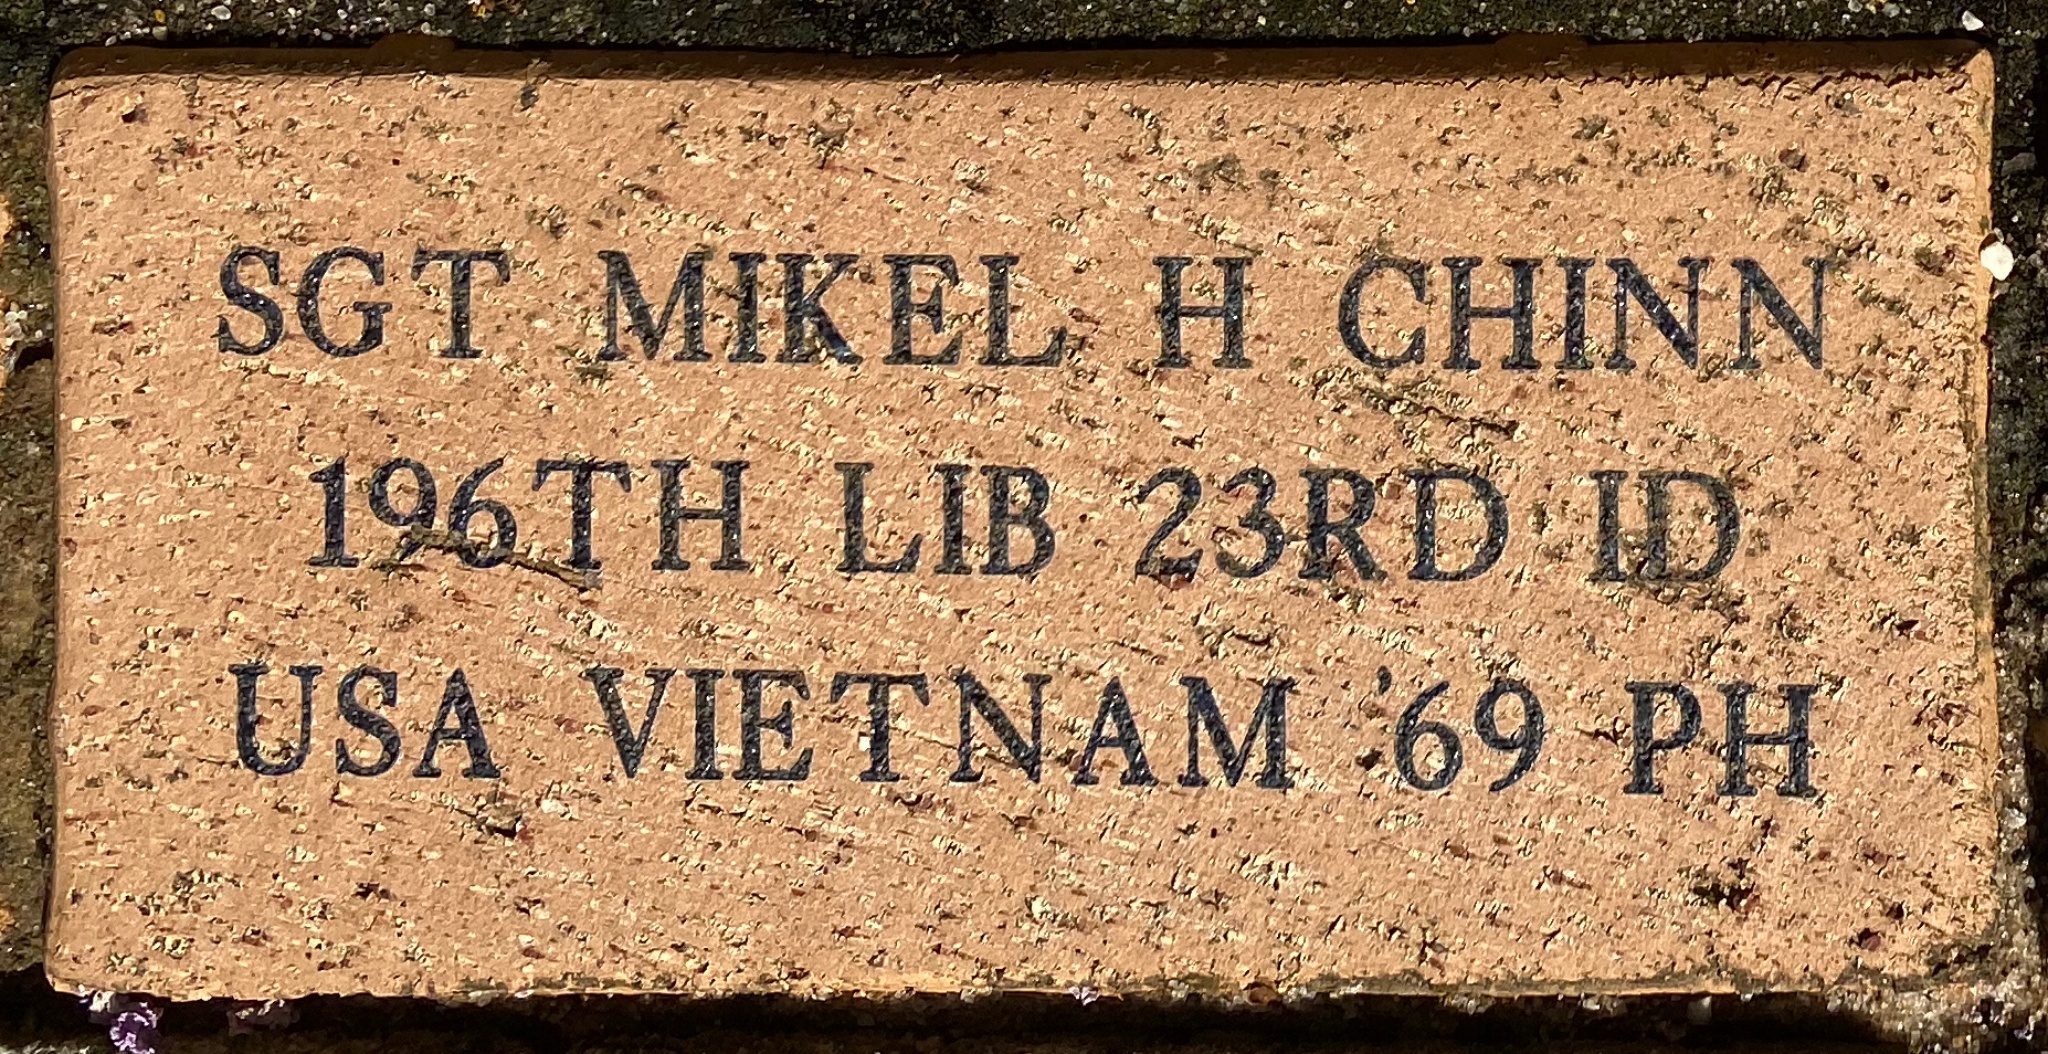 SGT MIKEL H CHINN 196TH LIB 23RD ID USA VIETNAM ’69PH